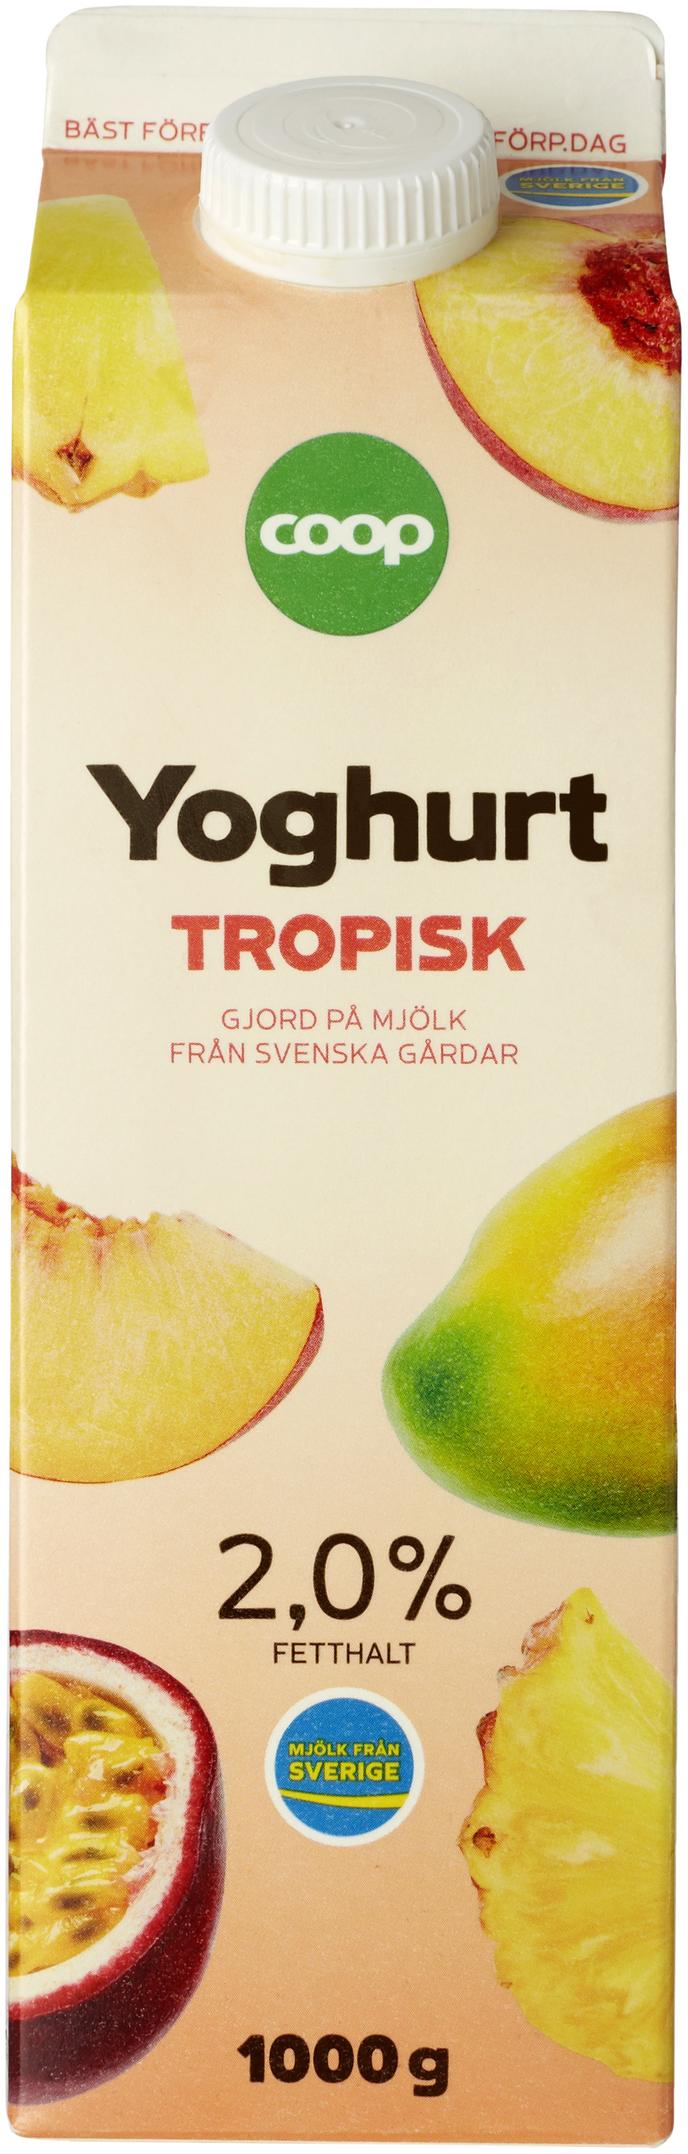 Yoghurt Tropisk för 23,5 kr på Coop